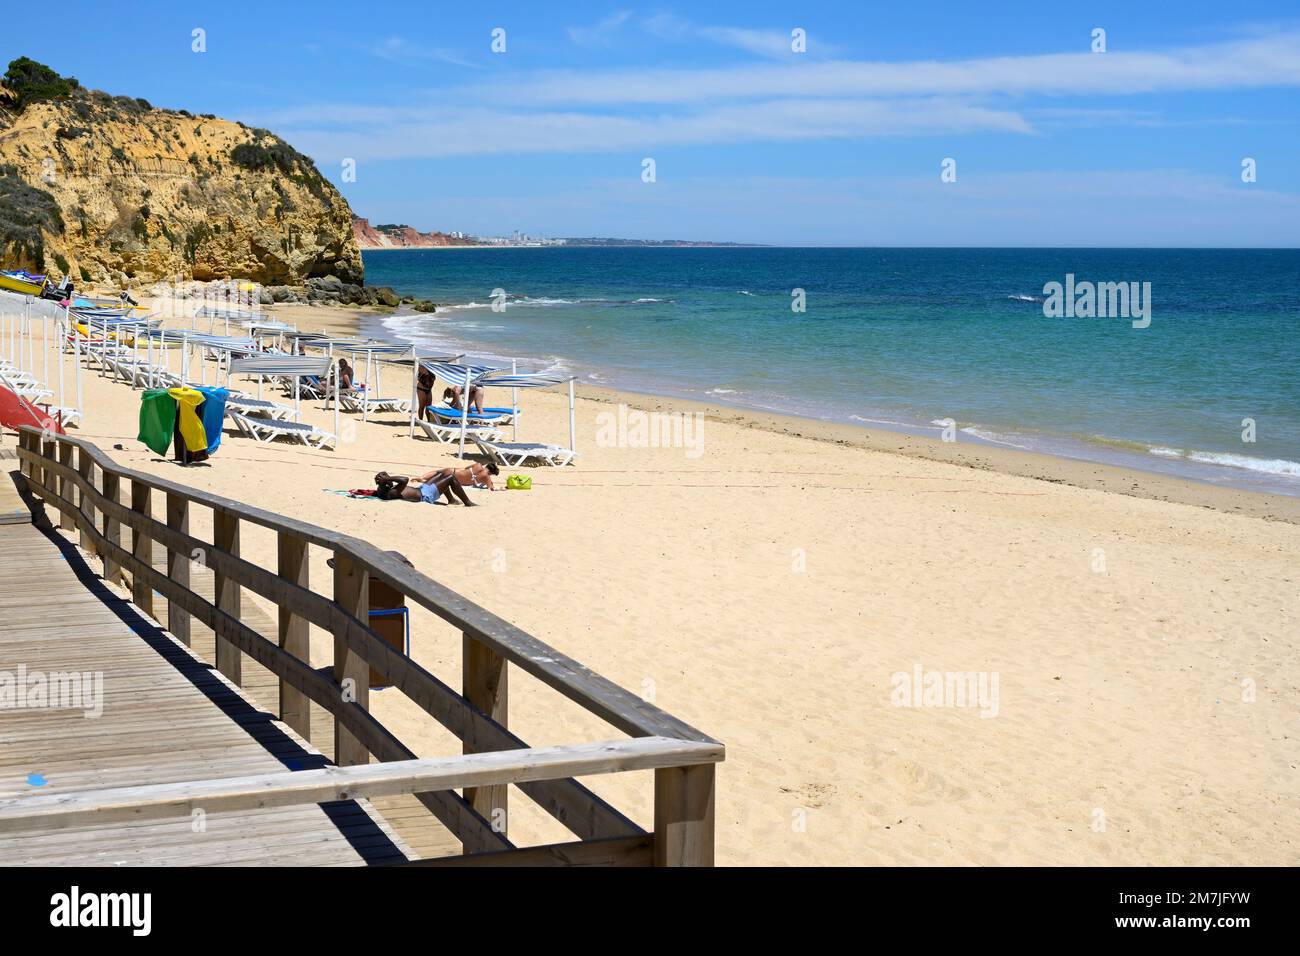 Olhos de Agua beach on the Atlantic Ocean, Olhao, Algarve, Portugal Stock Photo